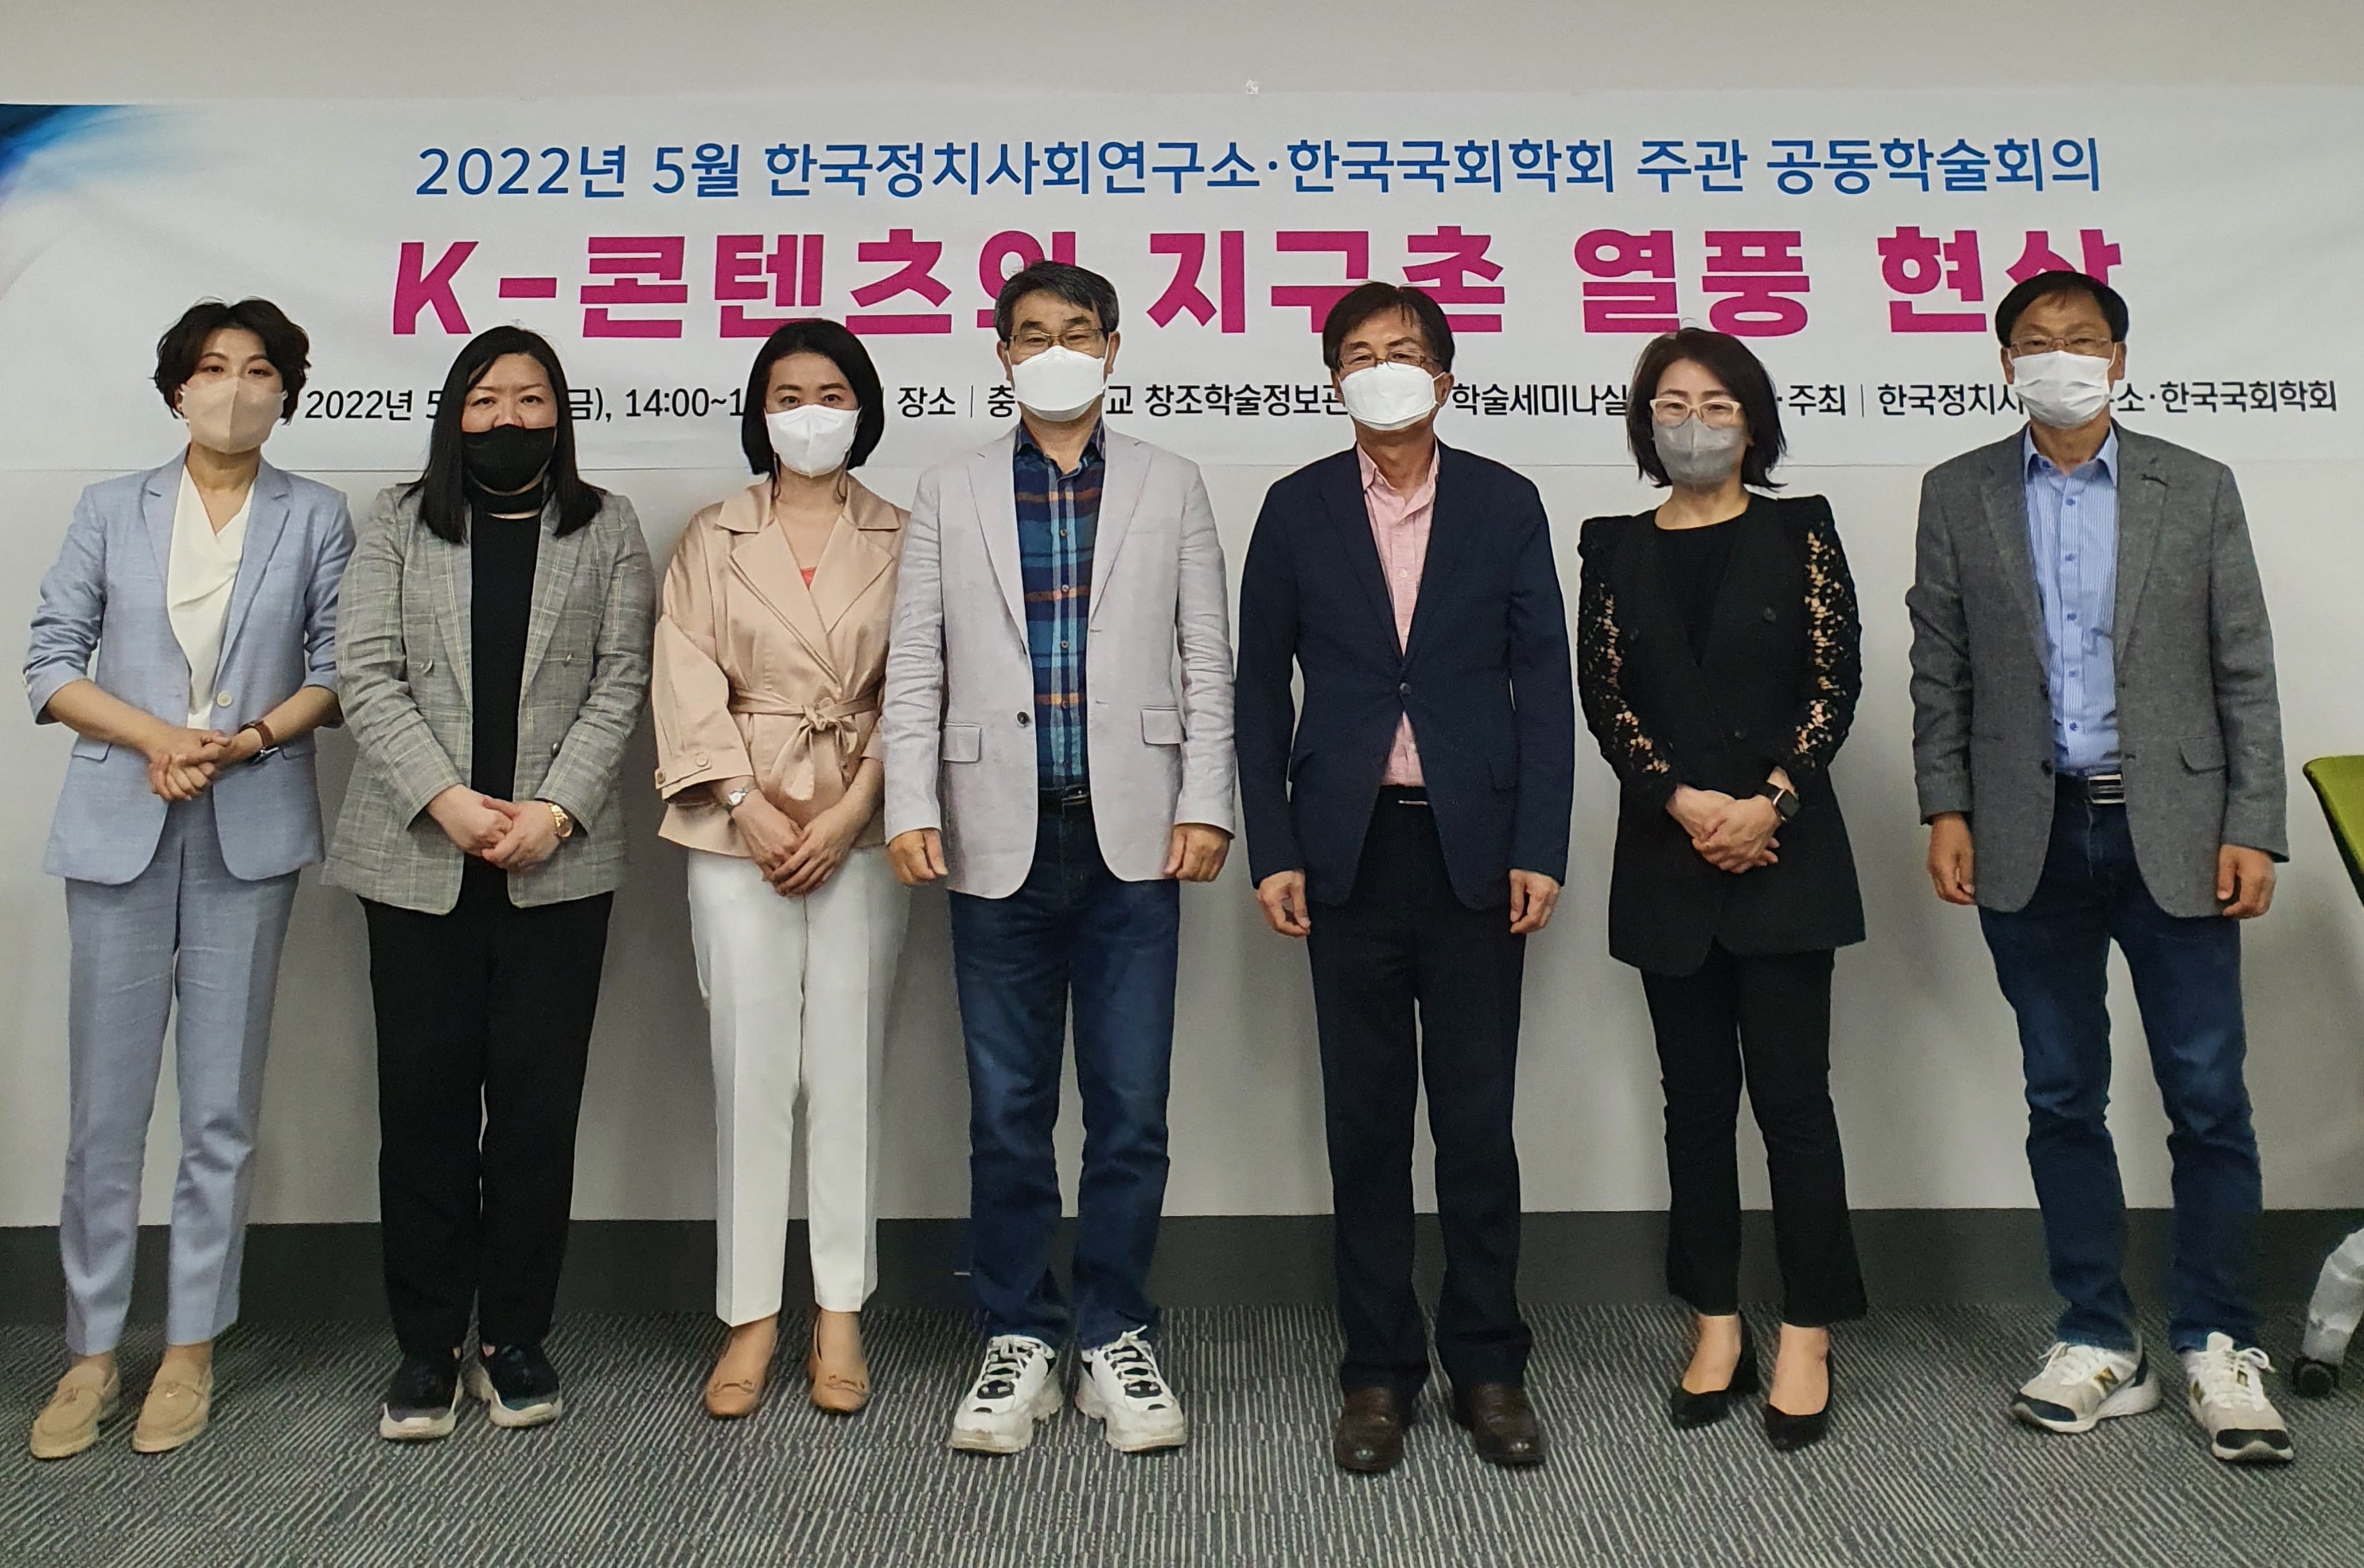 K-콘텐츠의 지구촌 열풍 현상 관련 공동학술회의 개최 